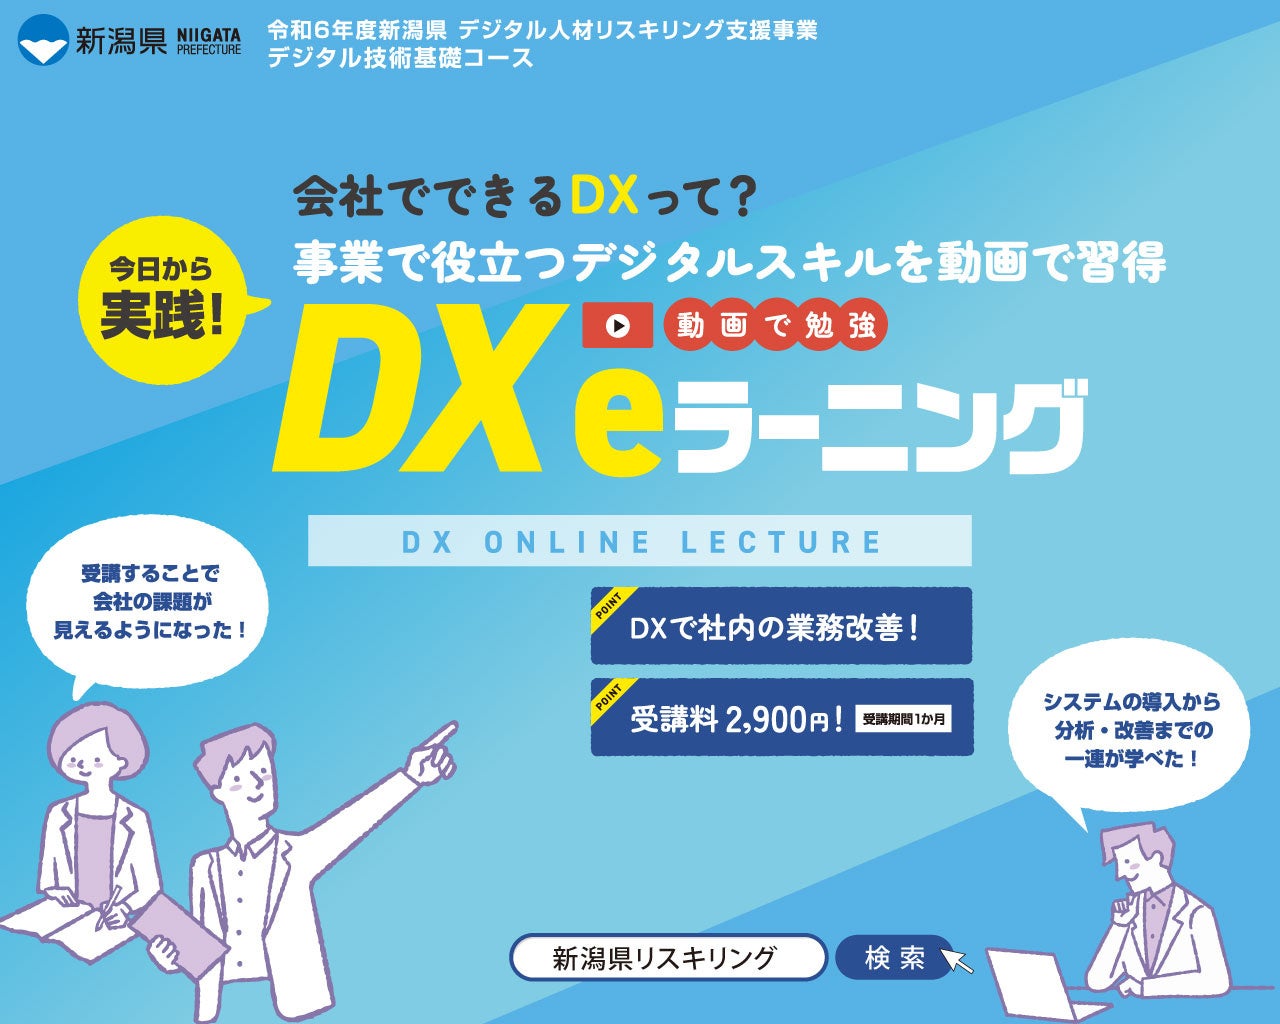 パジュ・ブレーン株式会社がデジタル人材を支援！DX入門コースが新潟県でリニューアル・オープン